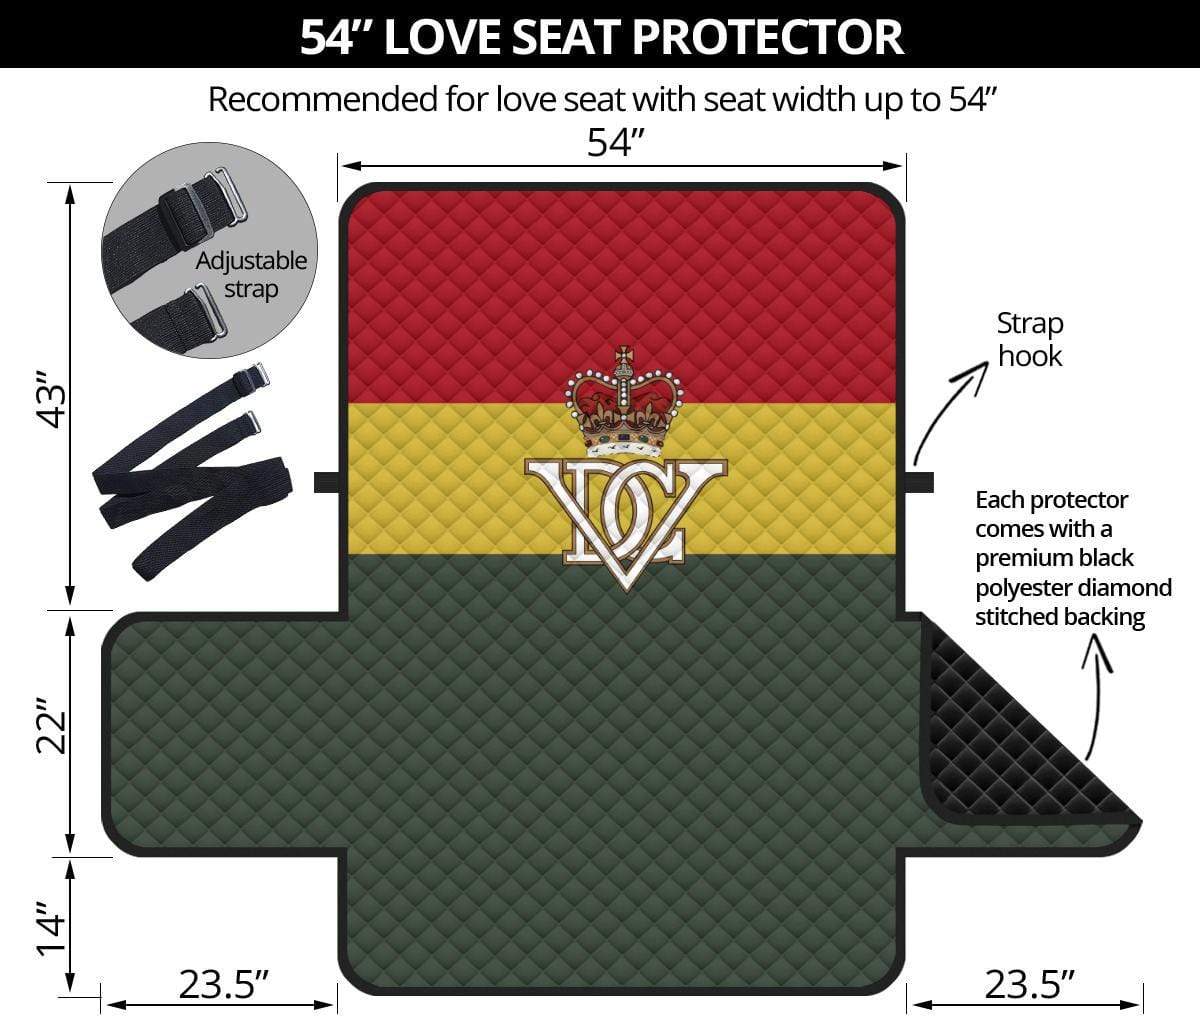 sofa protector 54" 5th Royal Inniskilling Dragoon Guards 2-Seat Sofa Protector